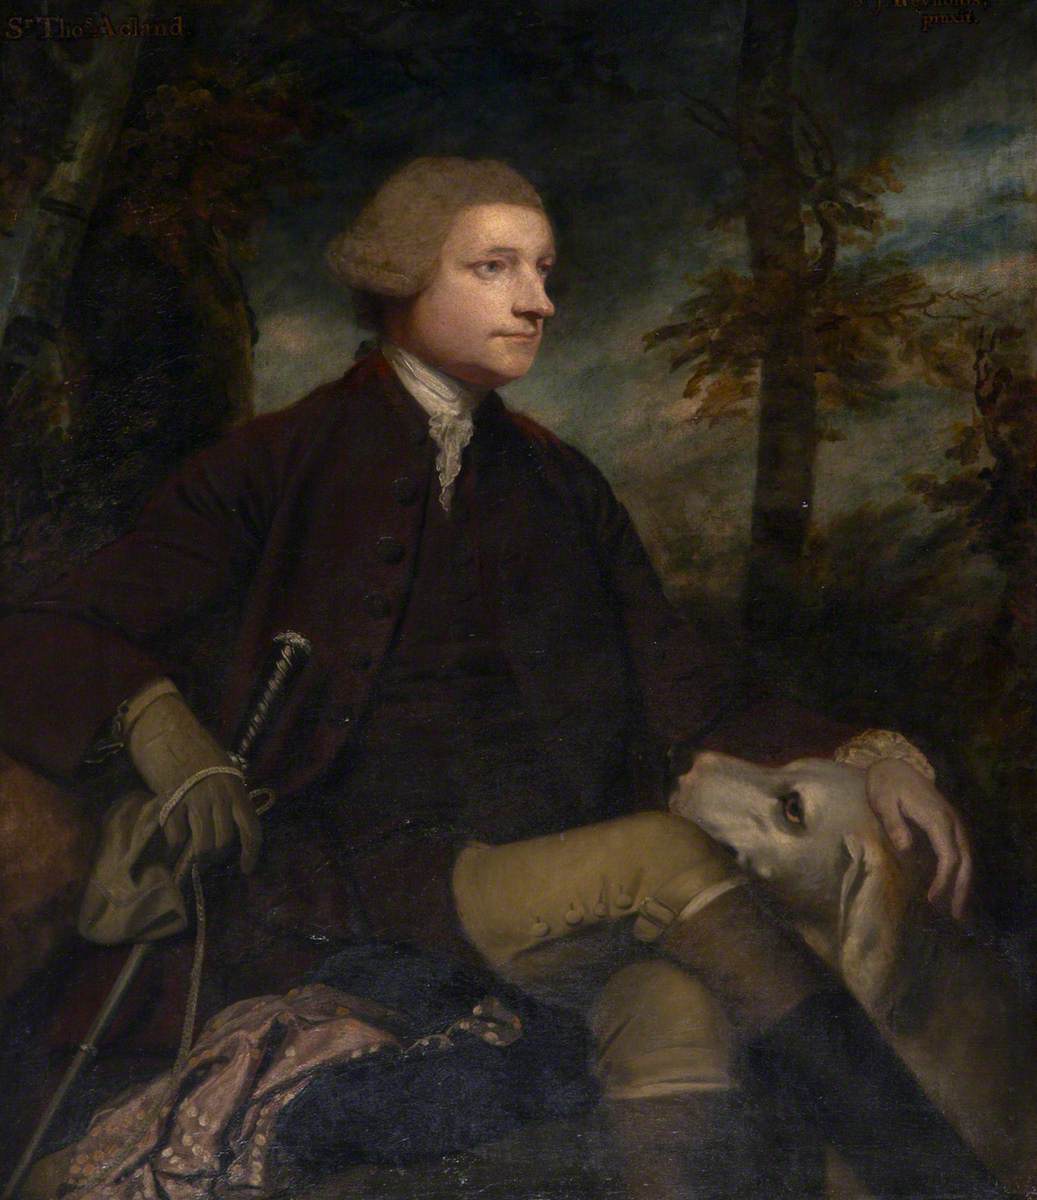 Sir Thomas Dyke Acland (1722–1785), 3rd Bt, MP